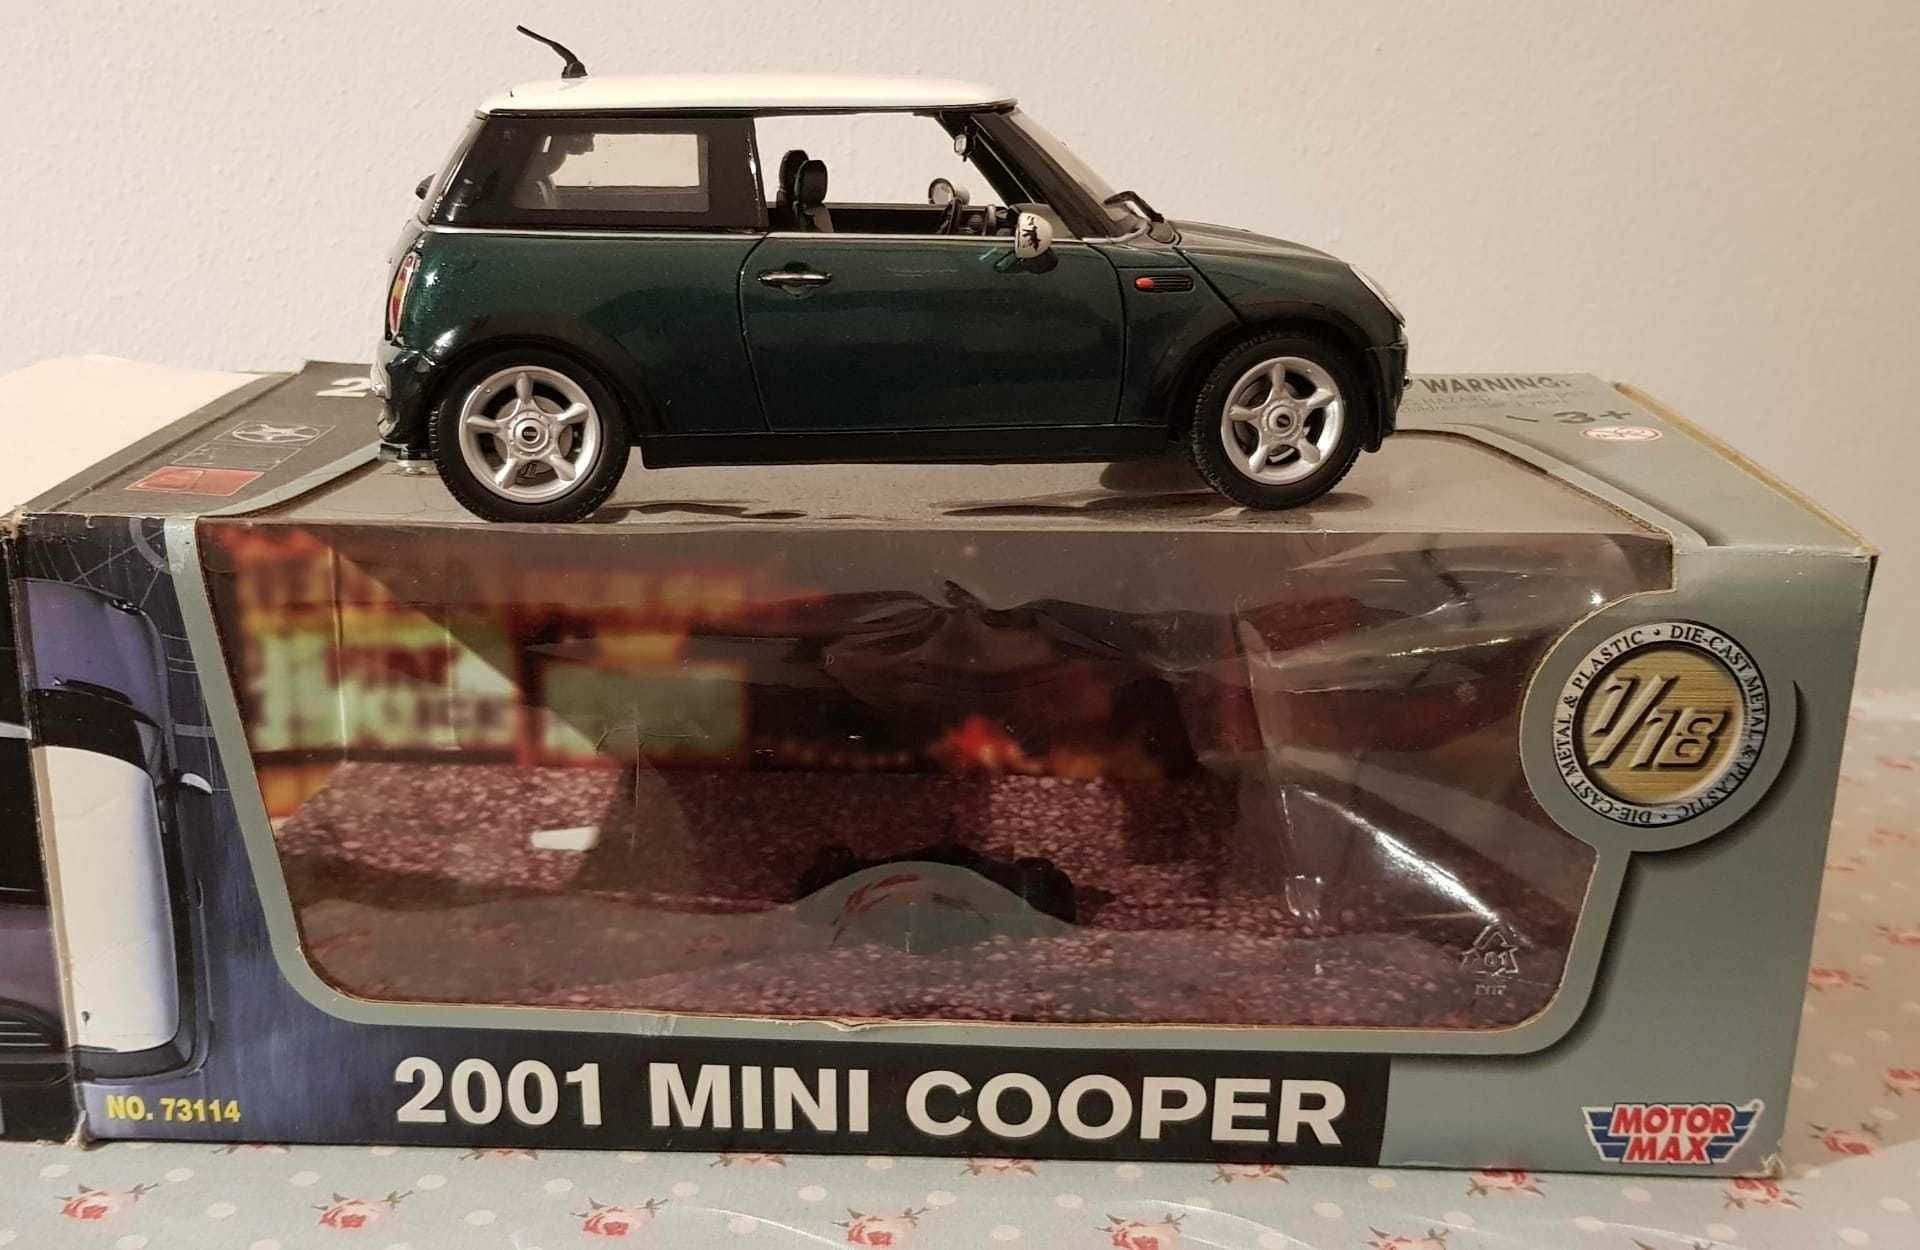 Motor Max - Mini Cooper 2001